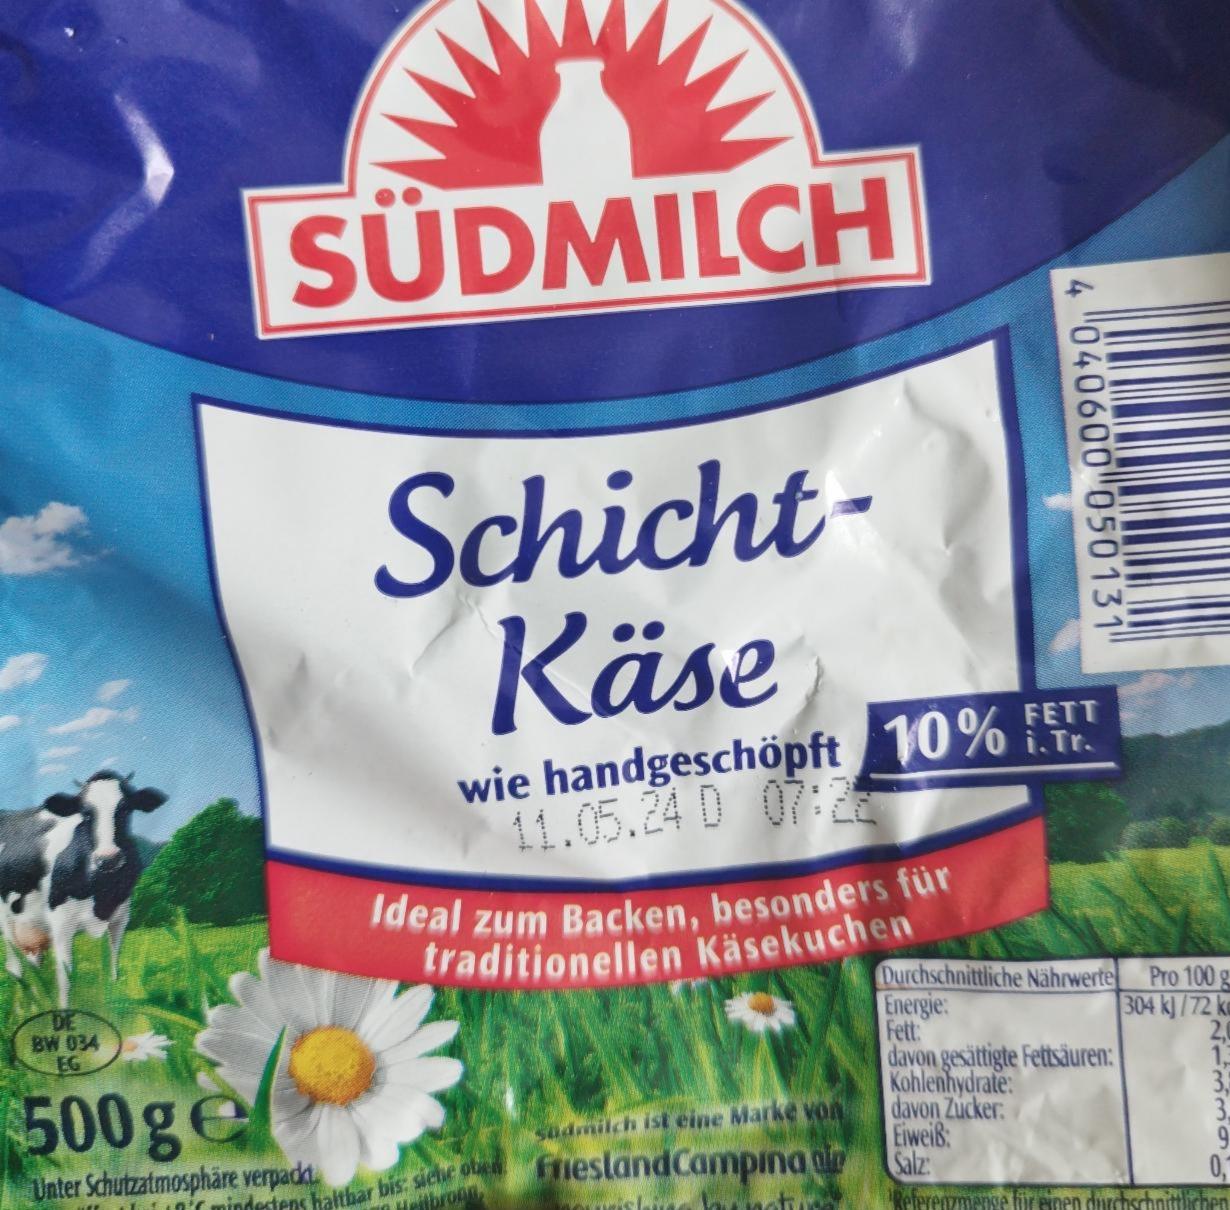 Fotografie - Schicht käse 10% fett Südmilch